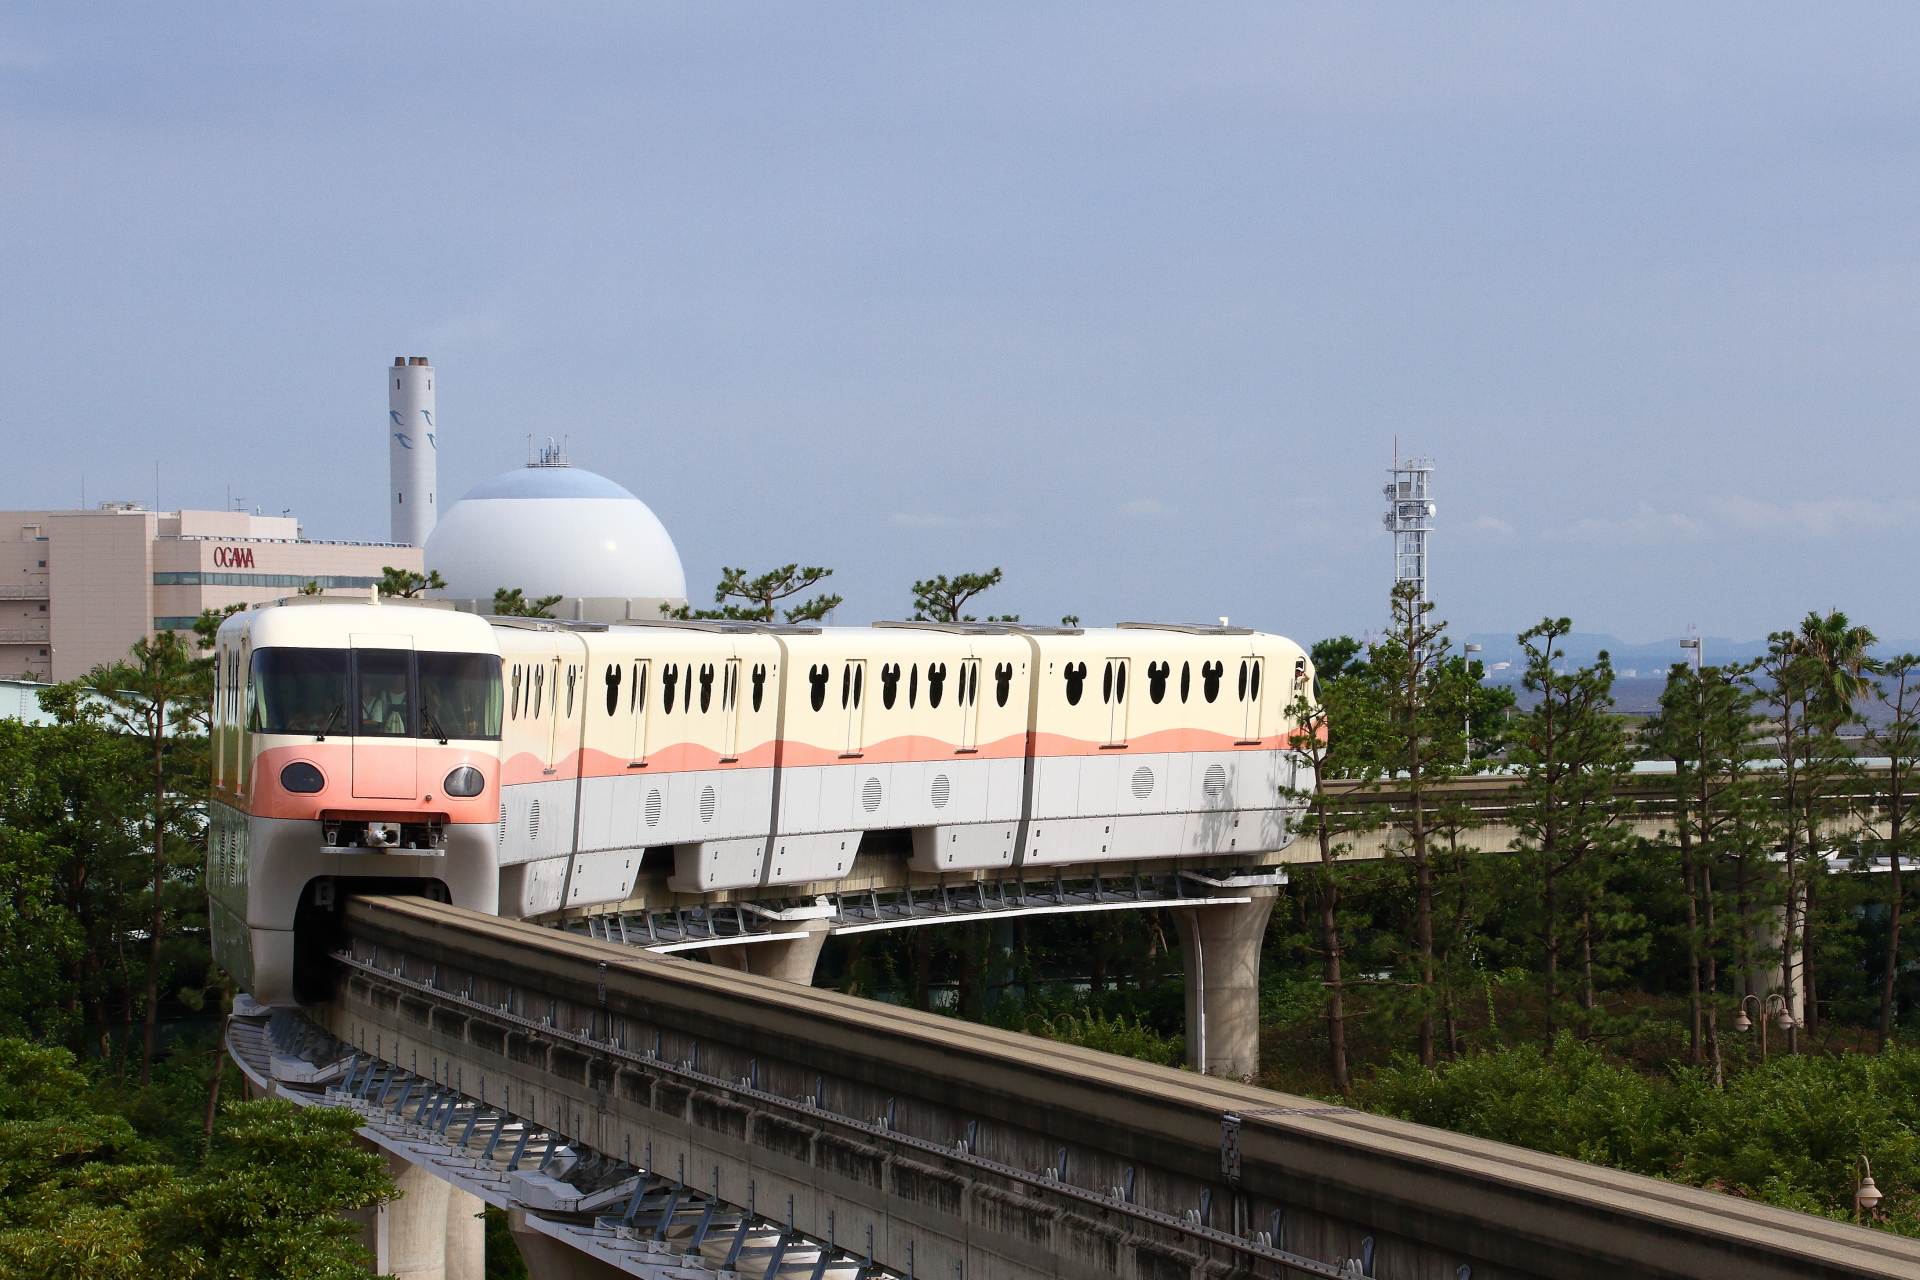 ディズニーリゾートラインで始まった車両の置き換え Odapedia 小田急を中心とした鉄道に関するブログメディア